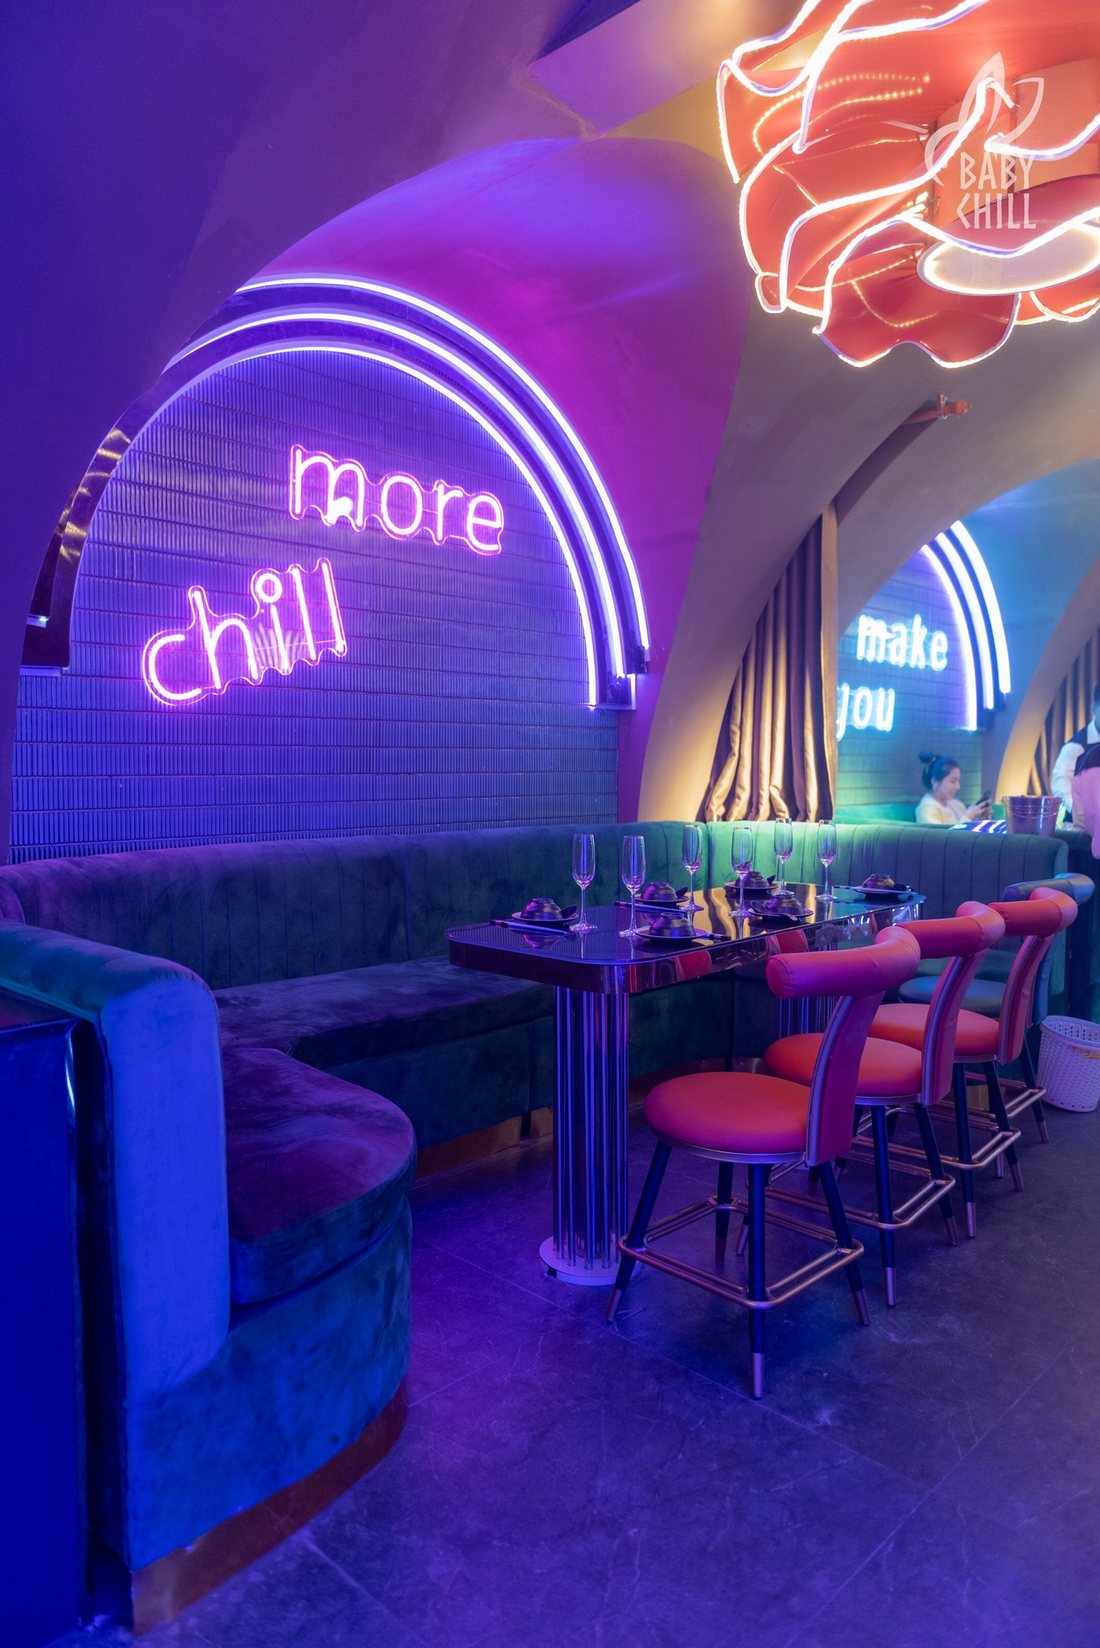 Baby Chill - Make You More Chill - Lounge Nhà hàng - Thiết kế thi công set up KTV DECOR 2